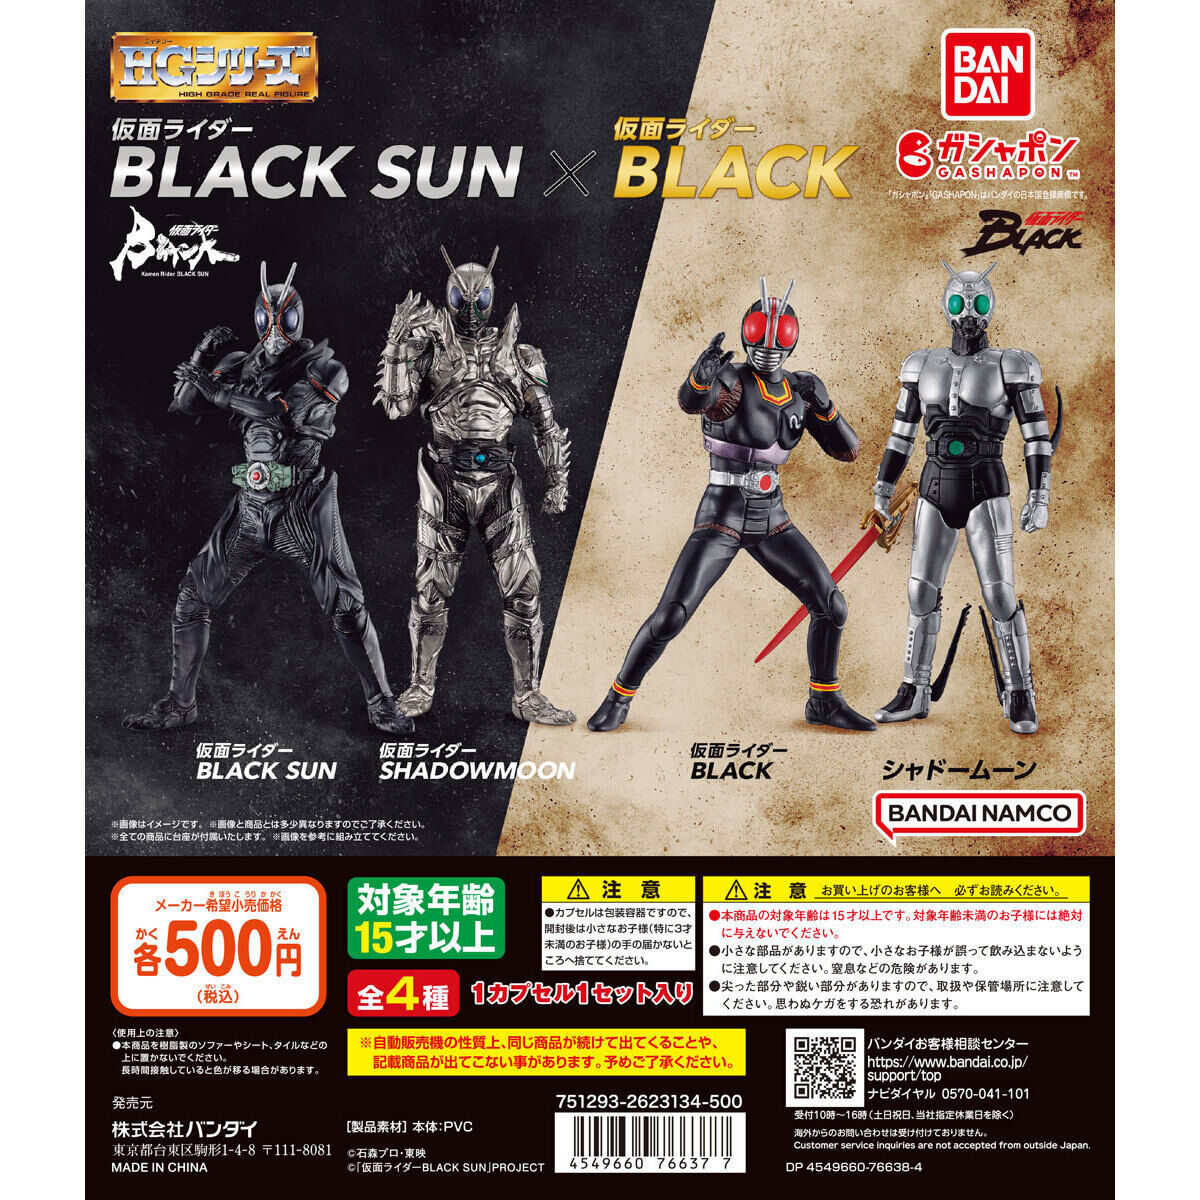 仮面ライダーBLACK SUN フィギュア 限定カラーバージョン - フィギュア